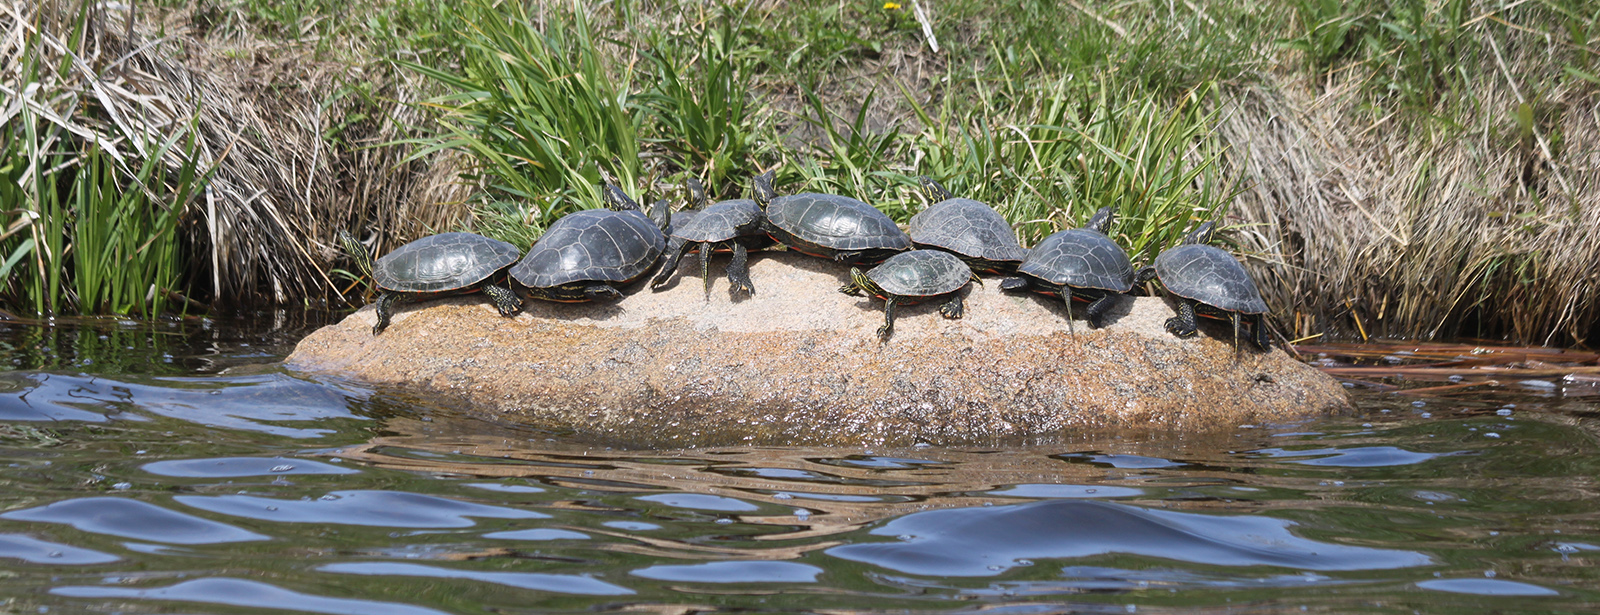 Turtles on Rock